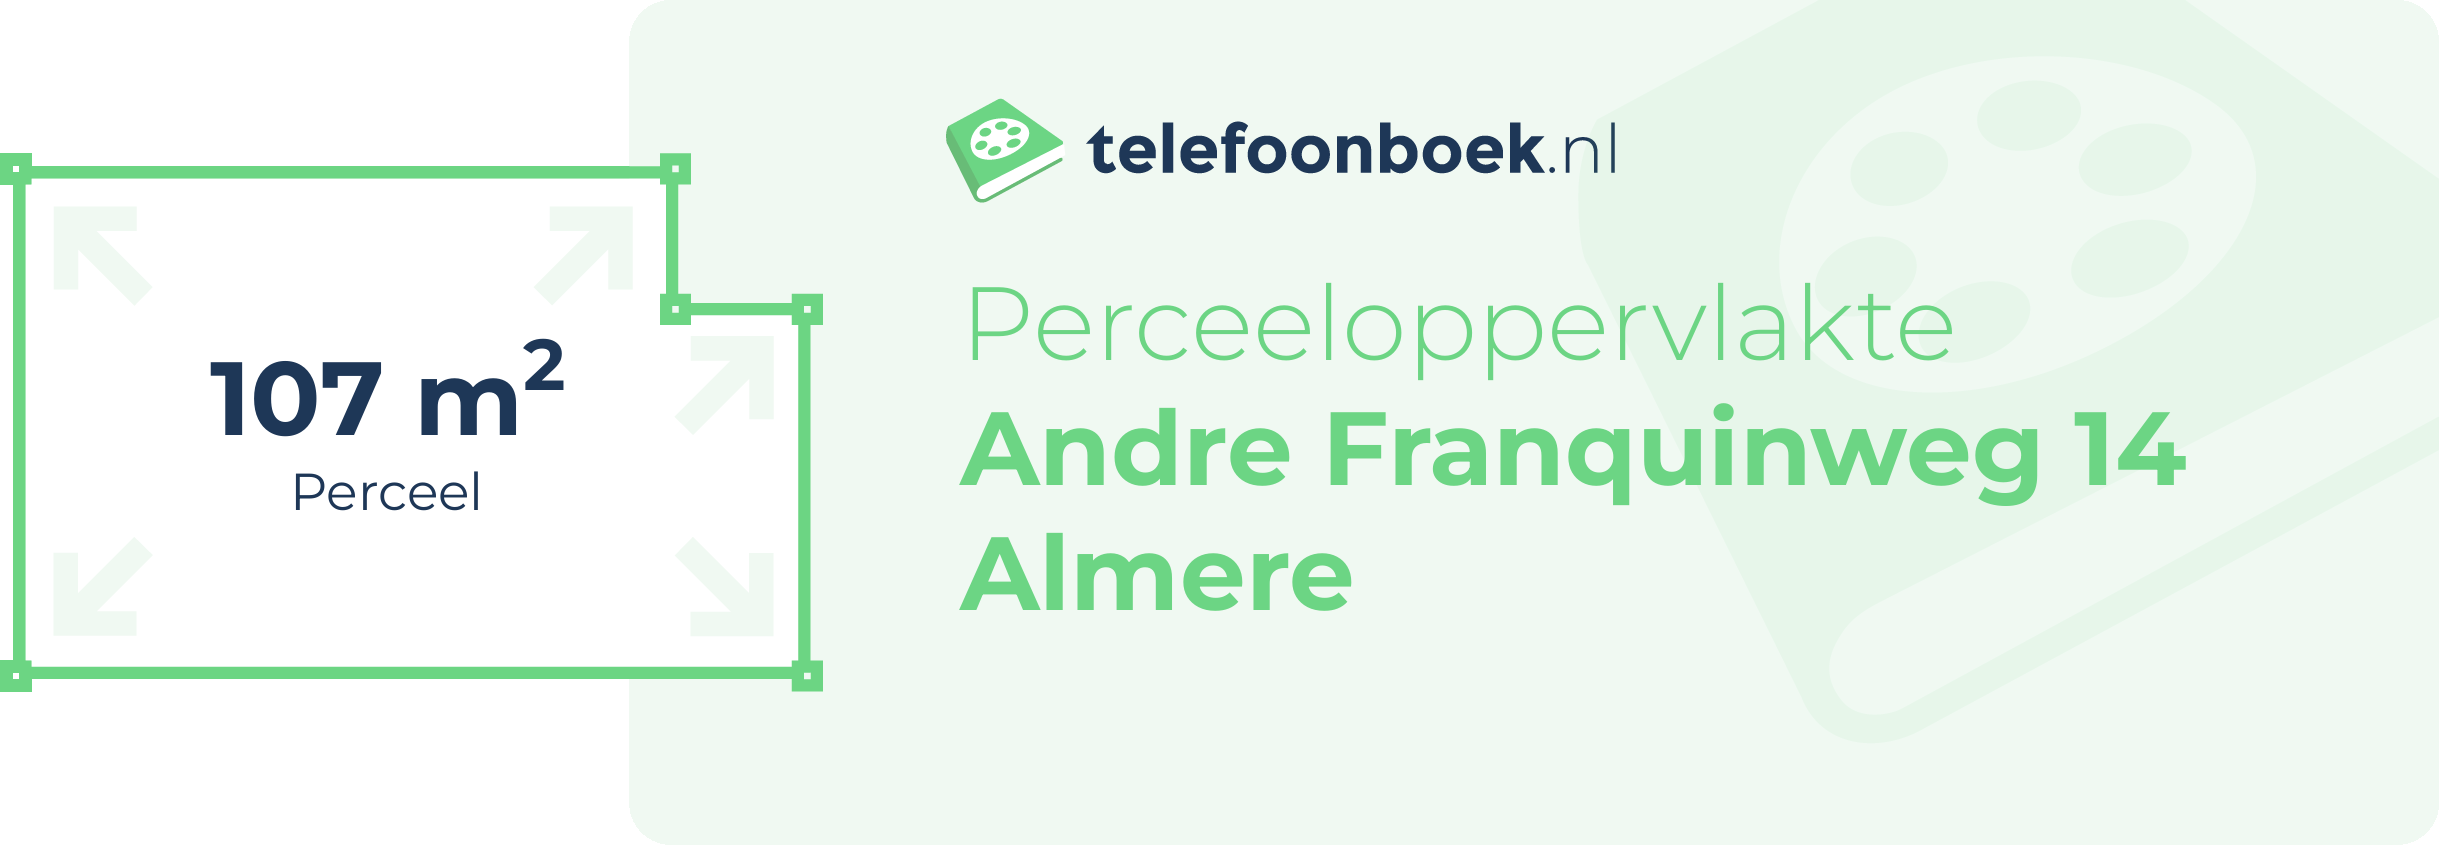 Perceeloppervlakte Andre Franquinweg 14 Almere